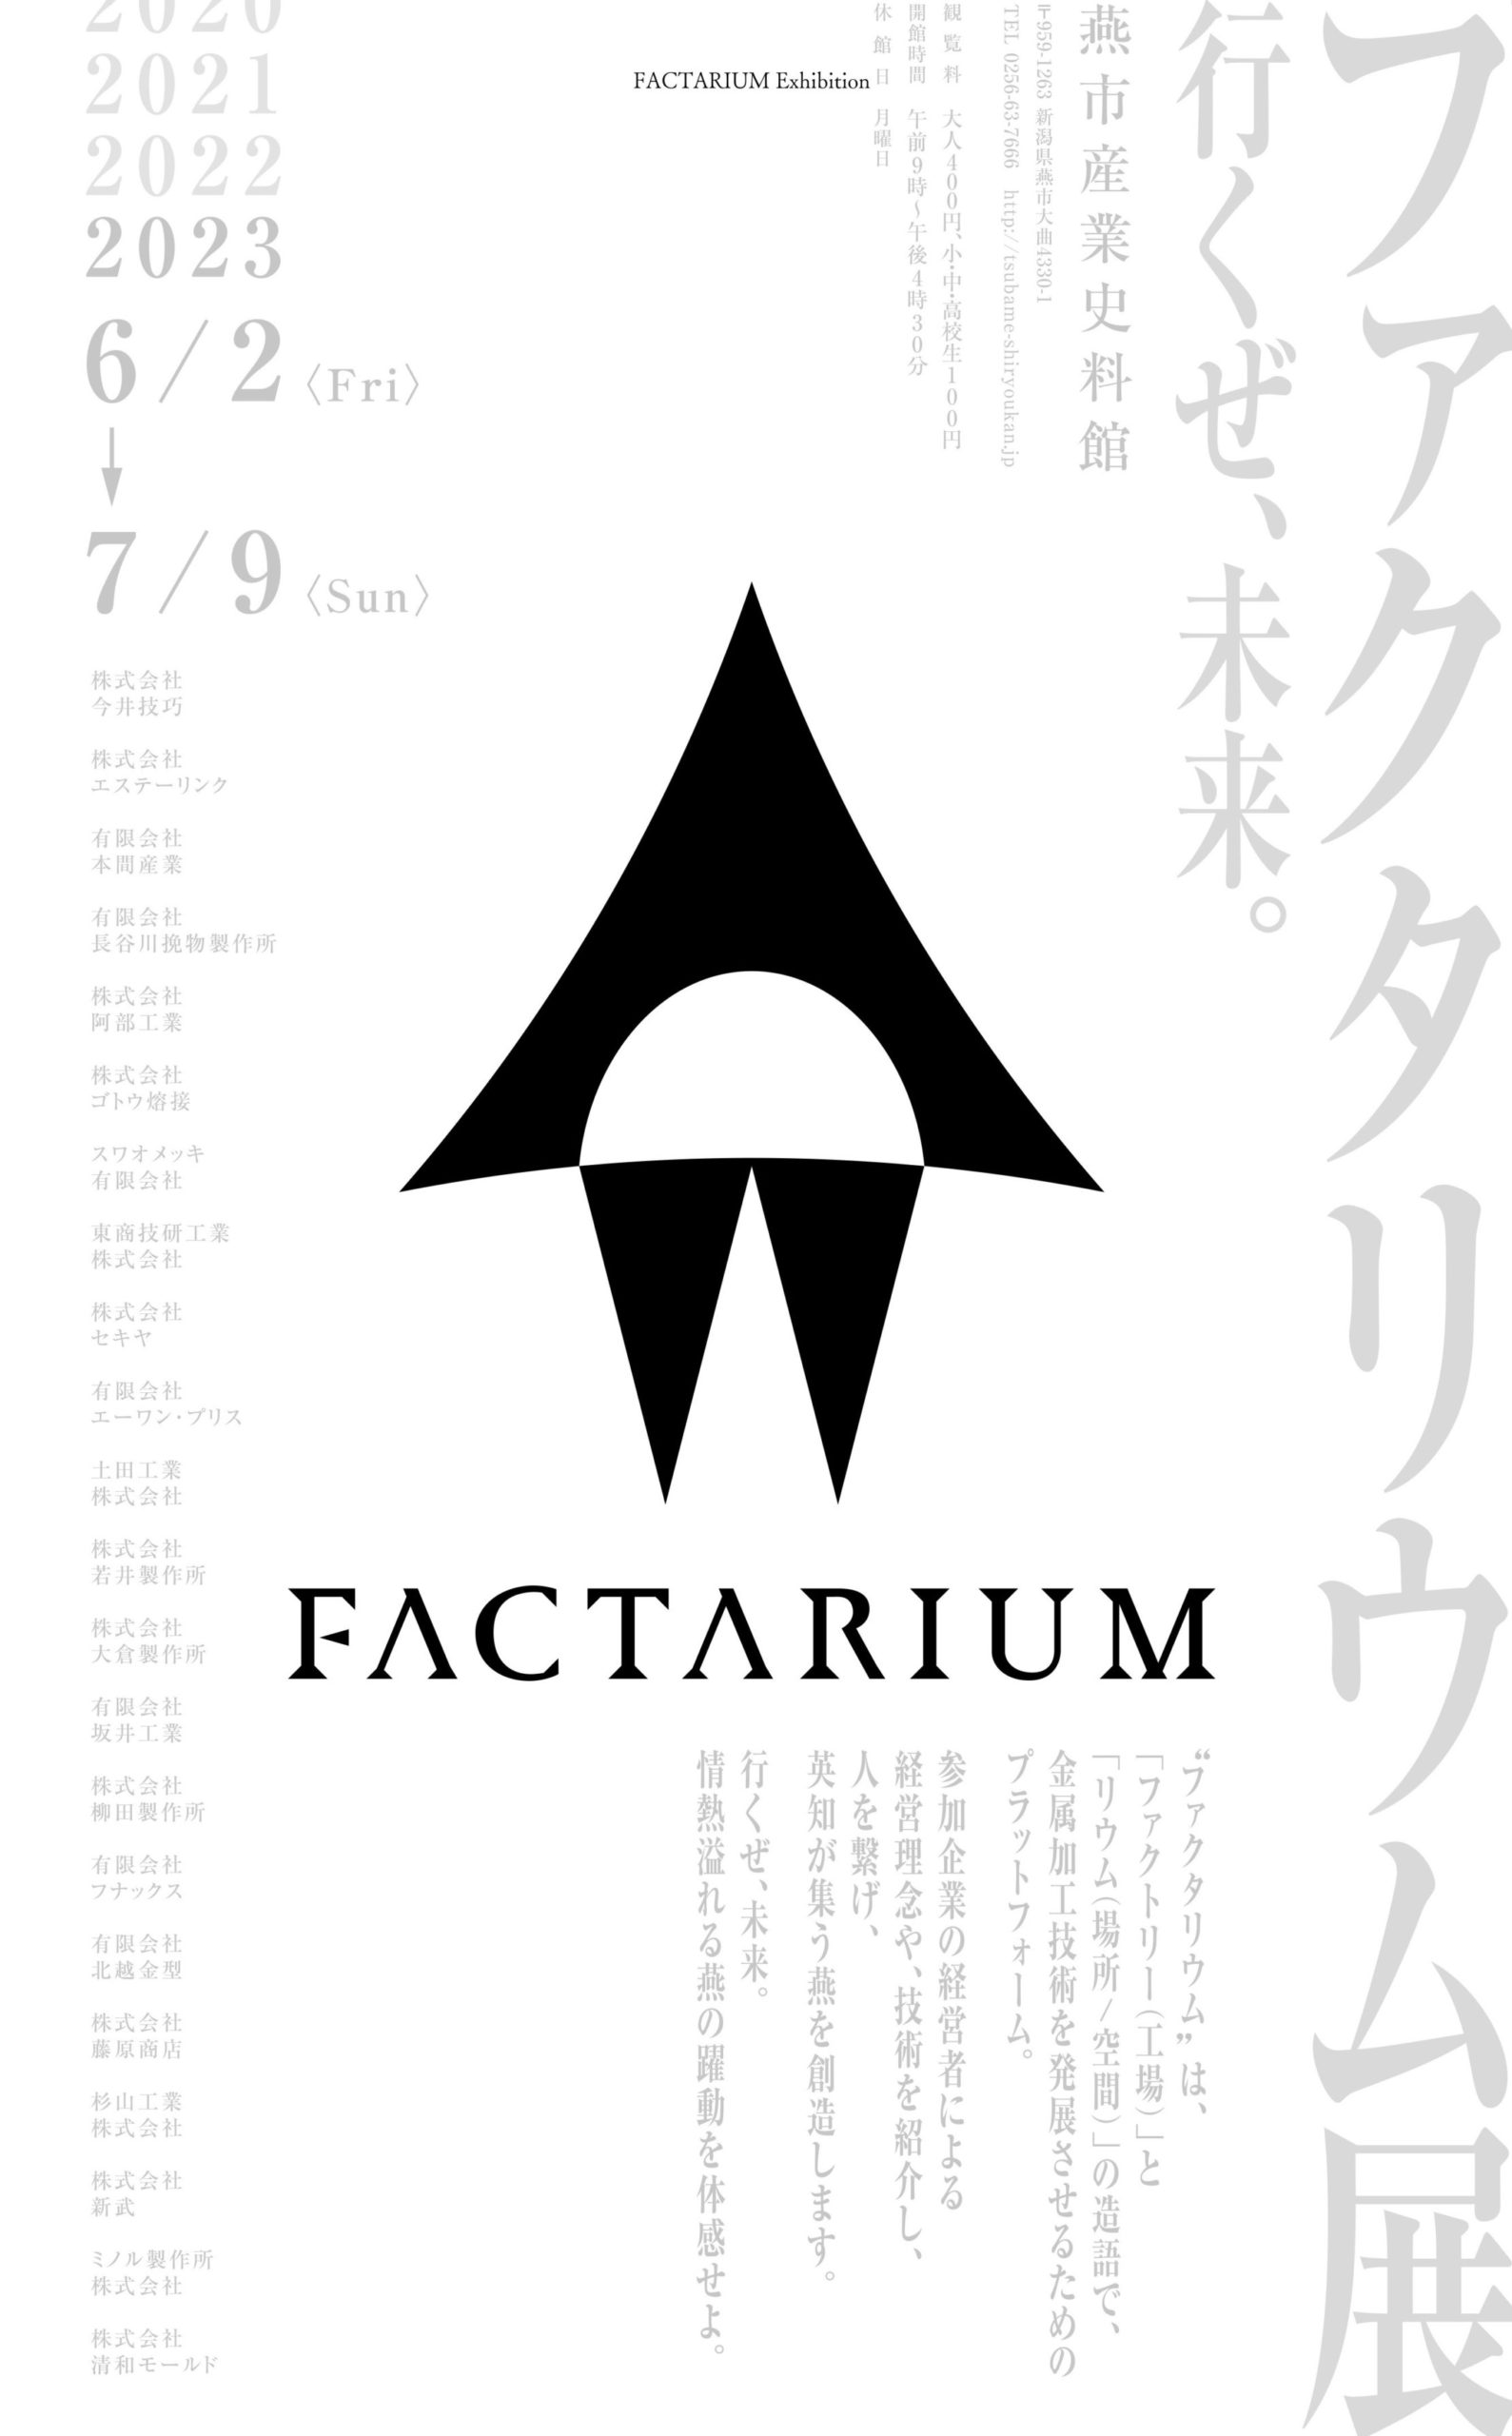 【ファクタリウム展】　燕市産業史料館で初開催